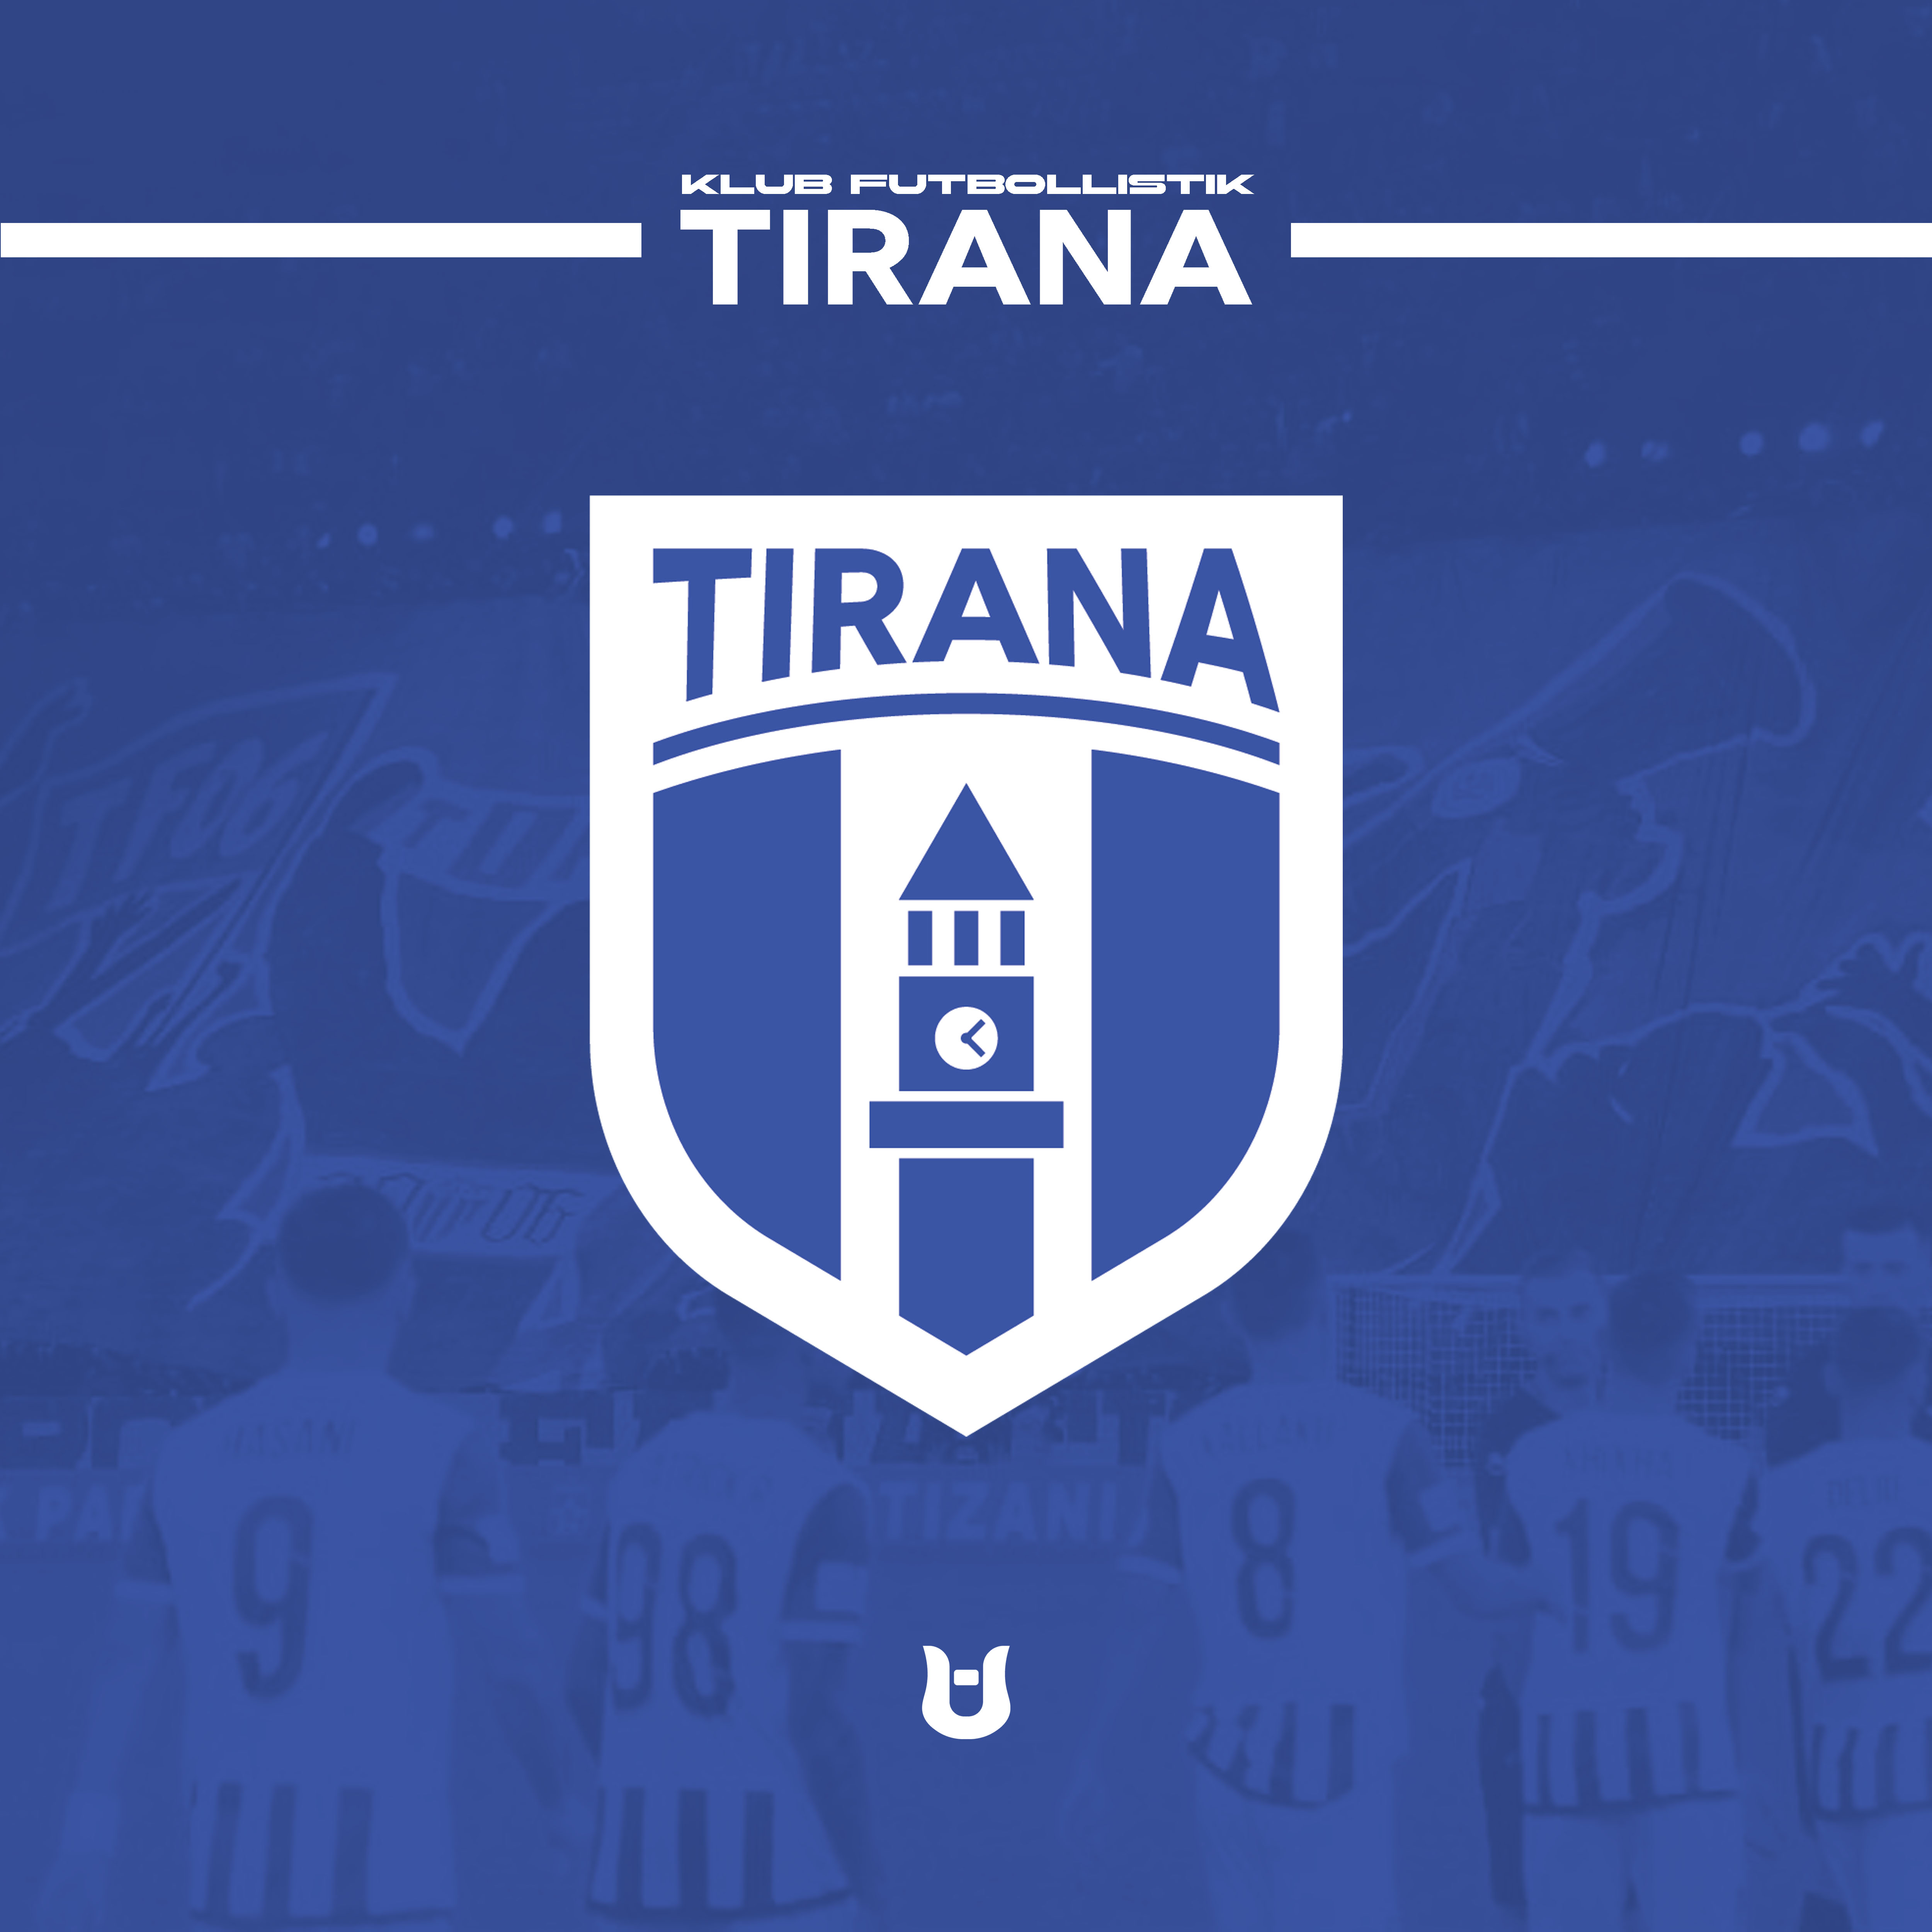 New KF Tirana Logo Unveiled - Footy Headlines